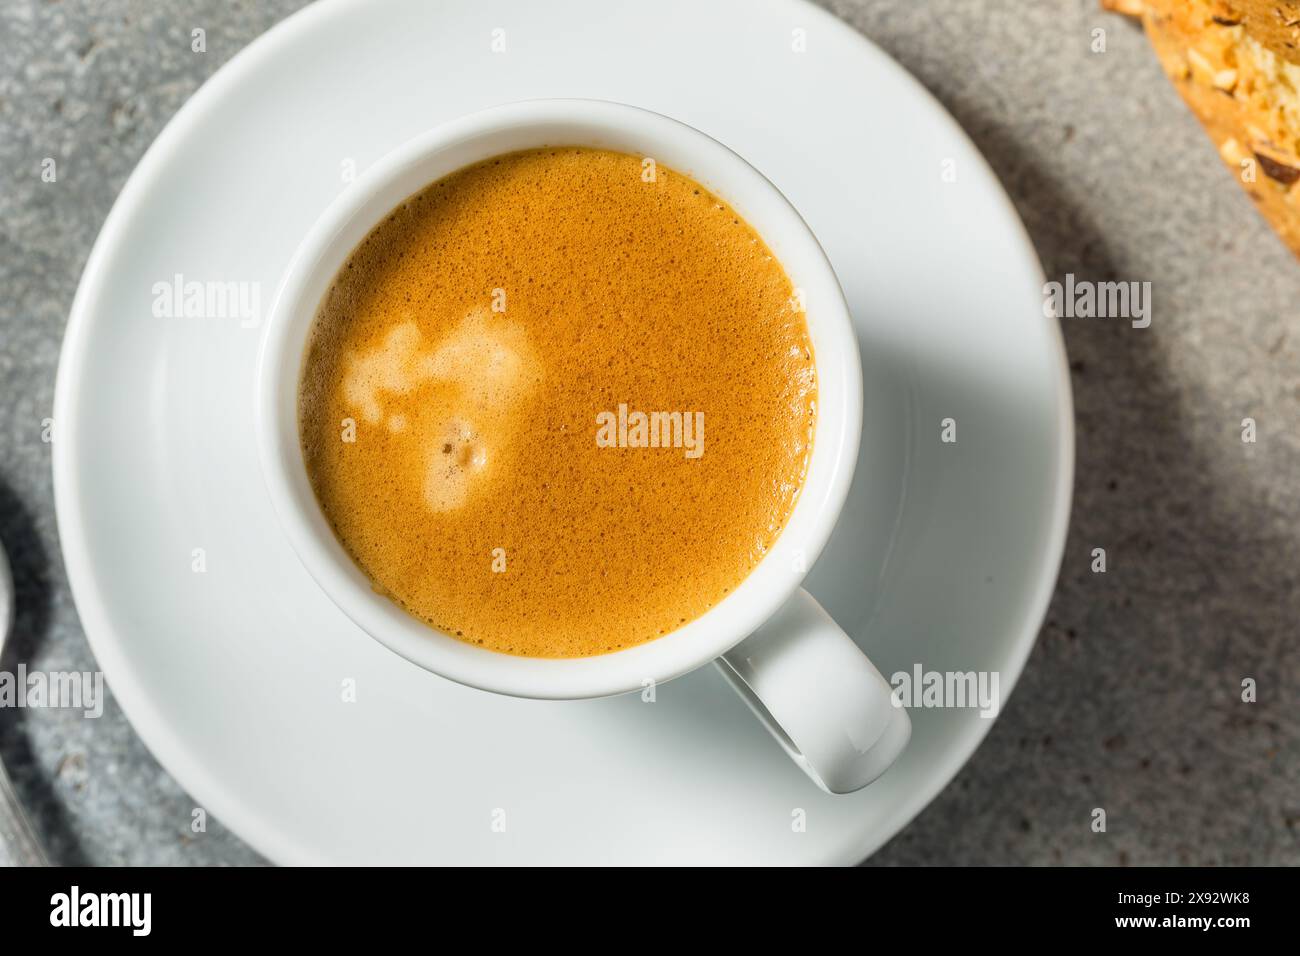 Caffè espresso italiano caldo e scuro in una tazza Foto Stock